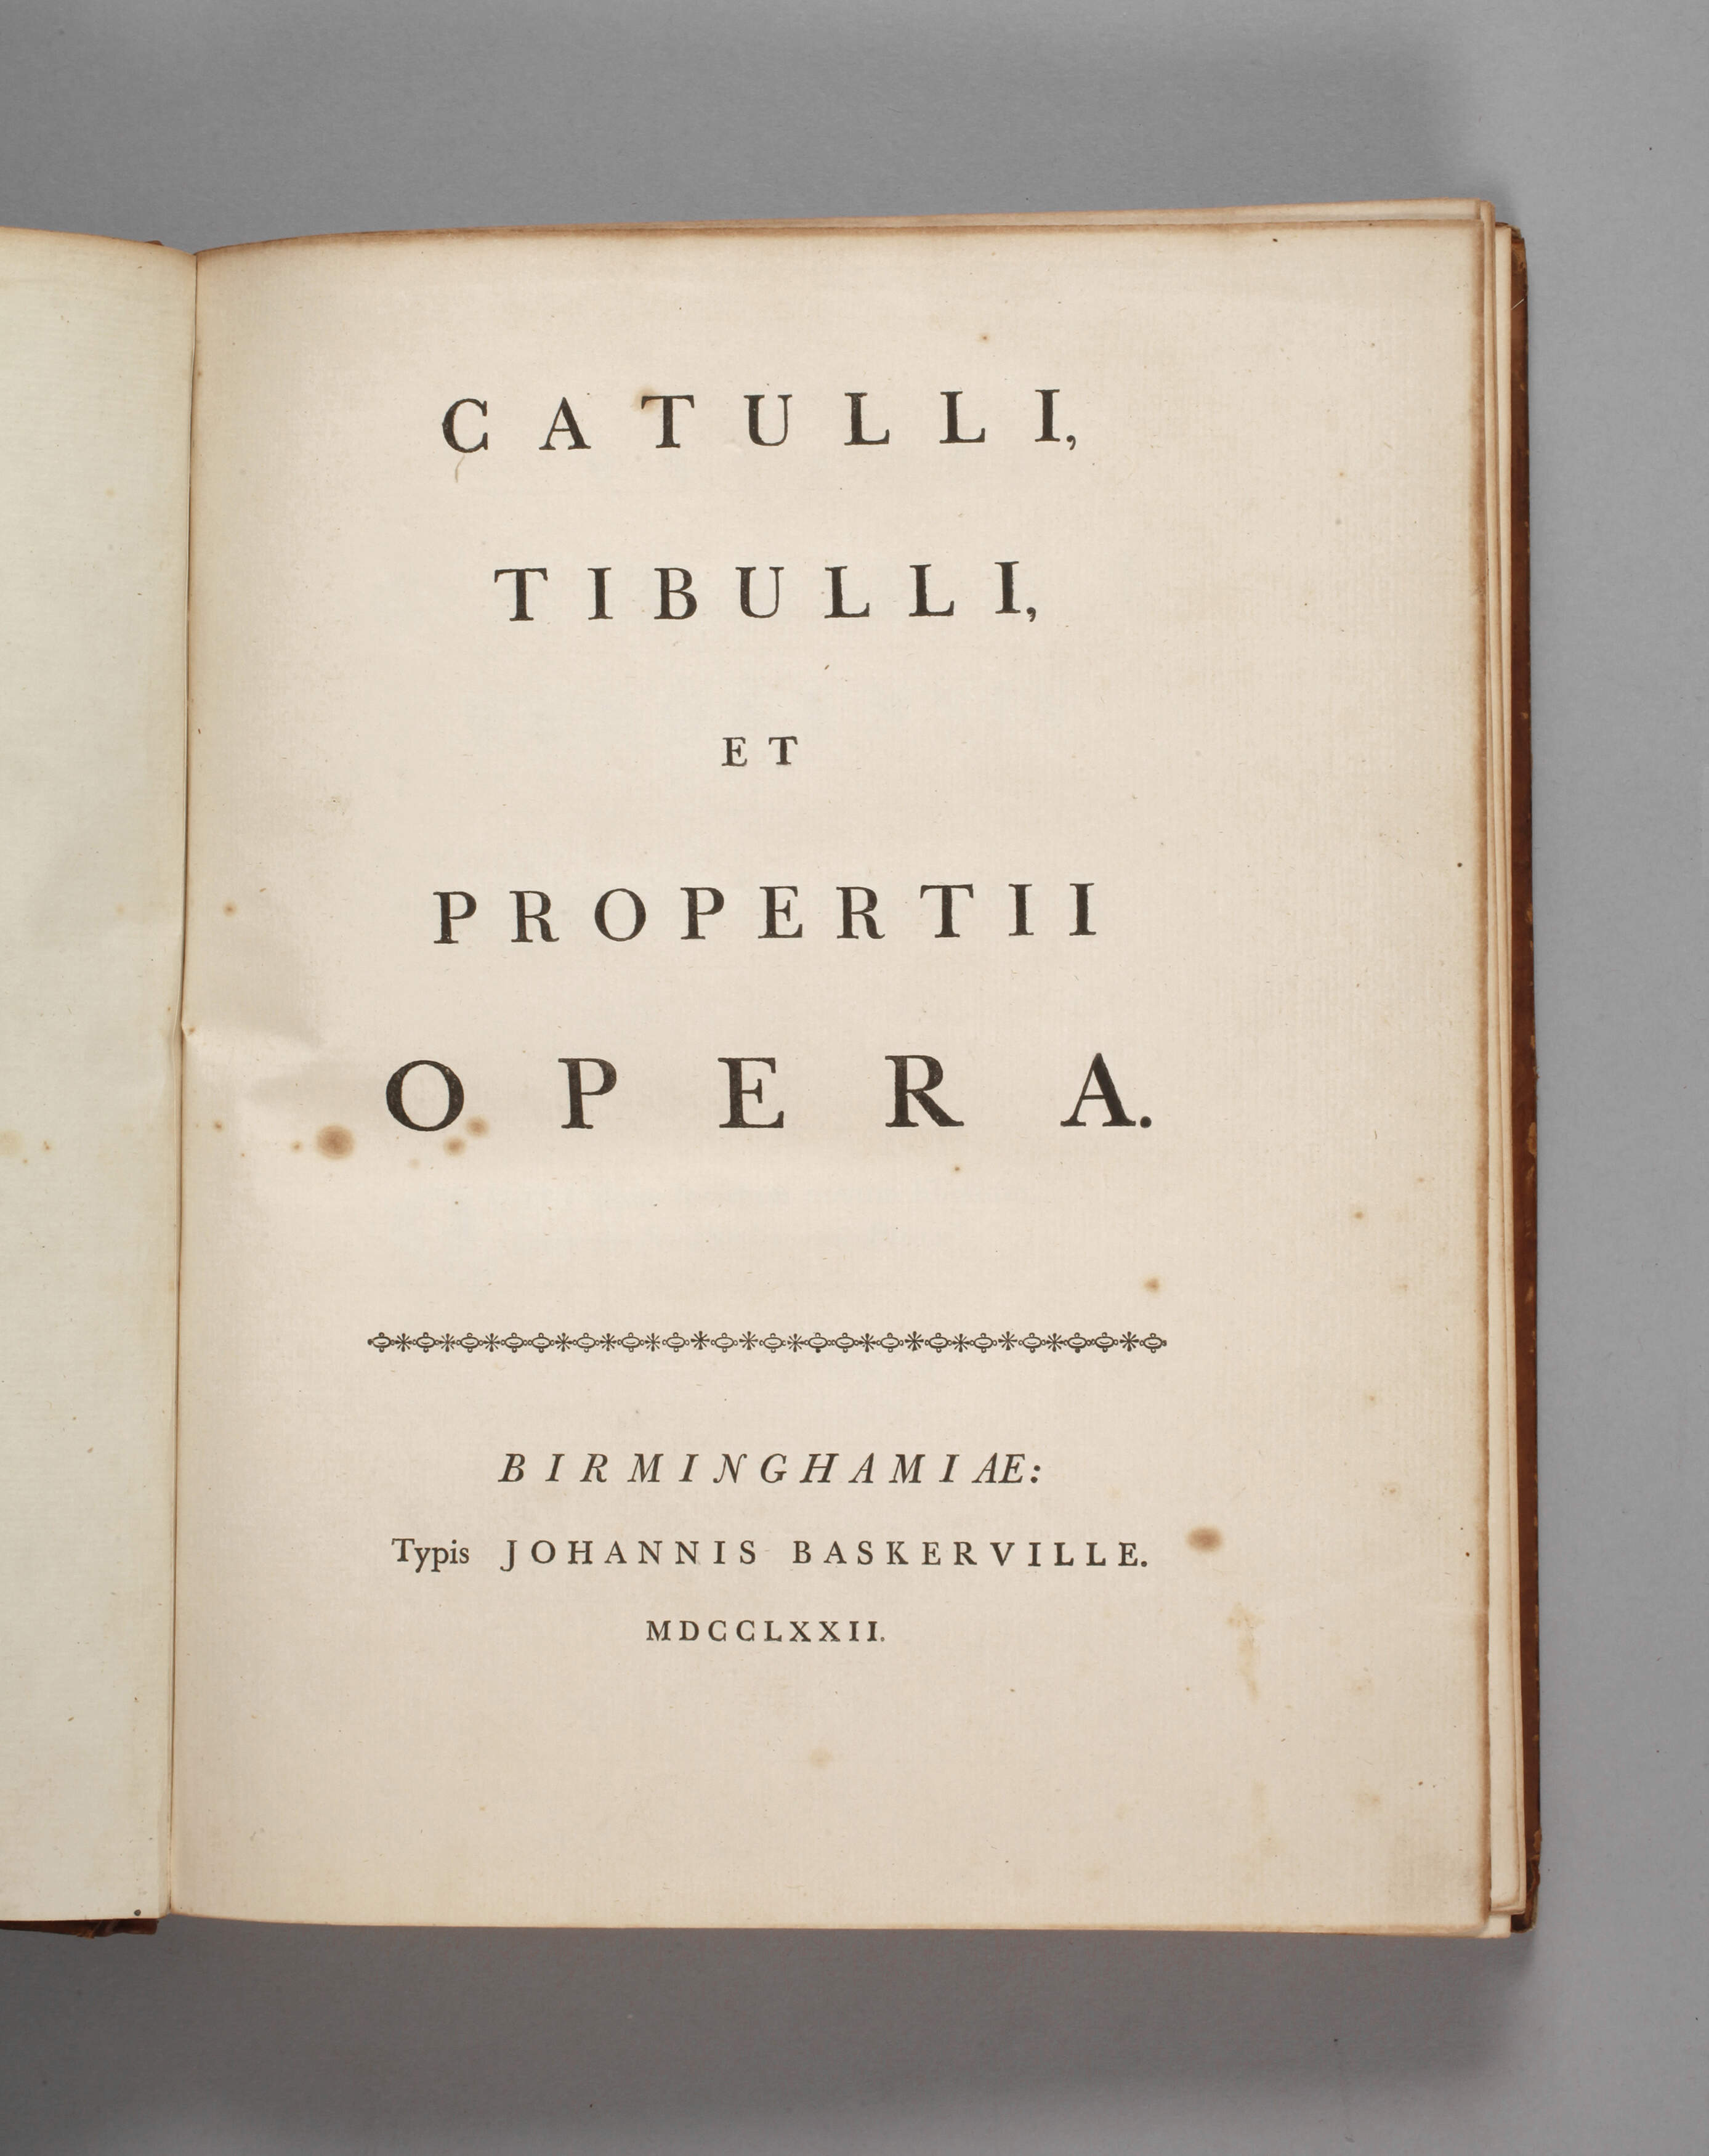 Die Werke Catullus, Tibullus und Propertius